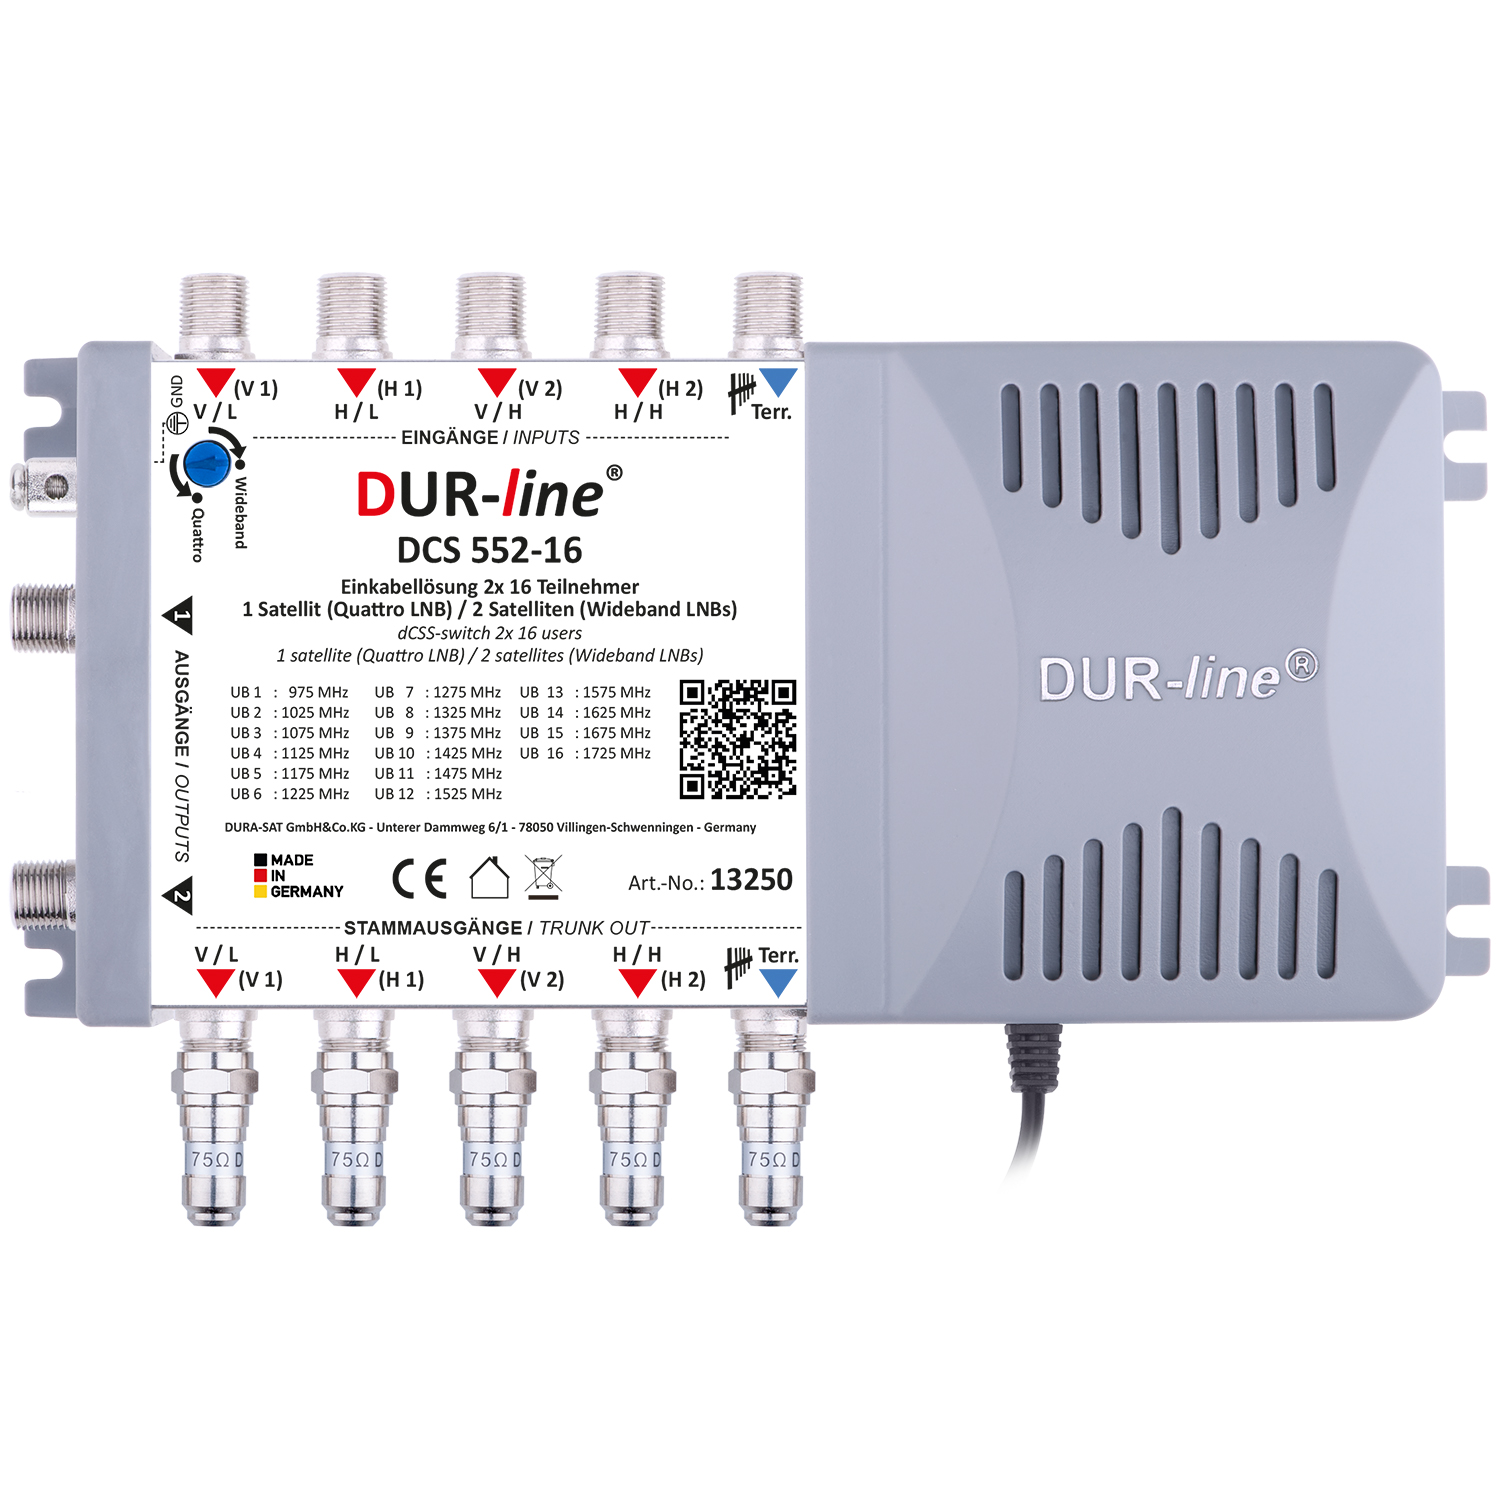 DUR-line DCS 552-16 - Einkabellösung